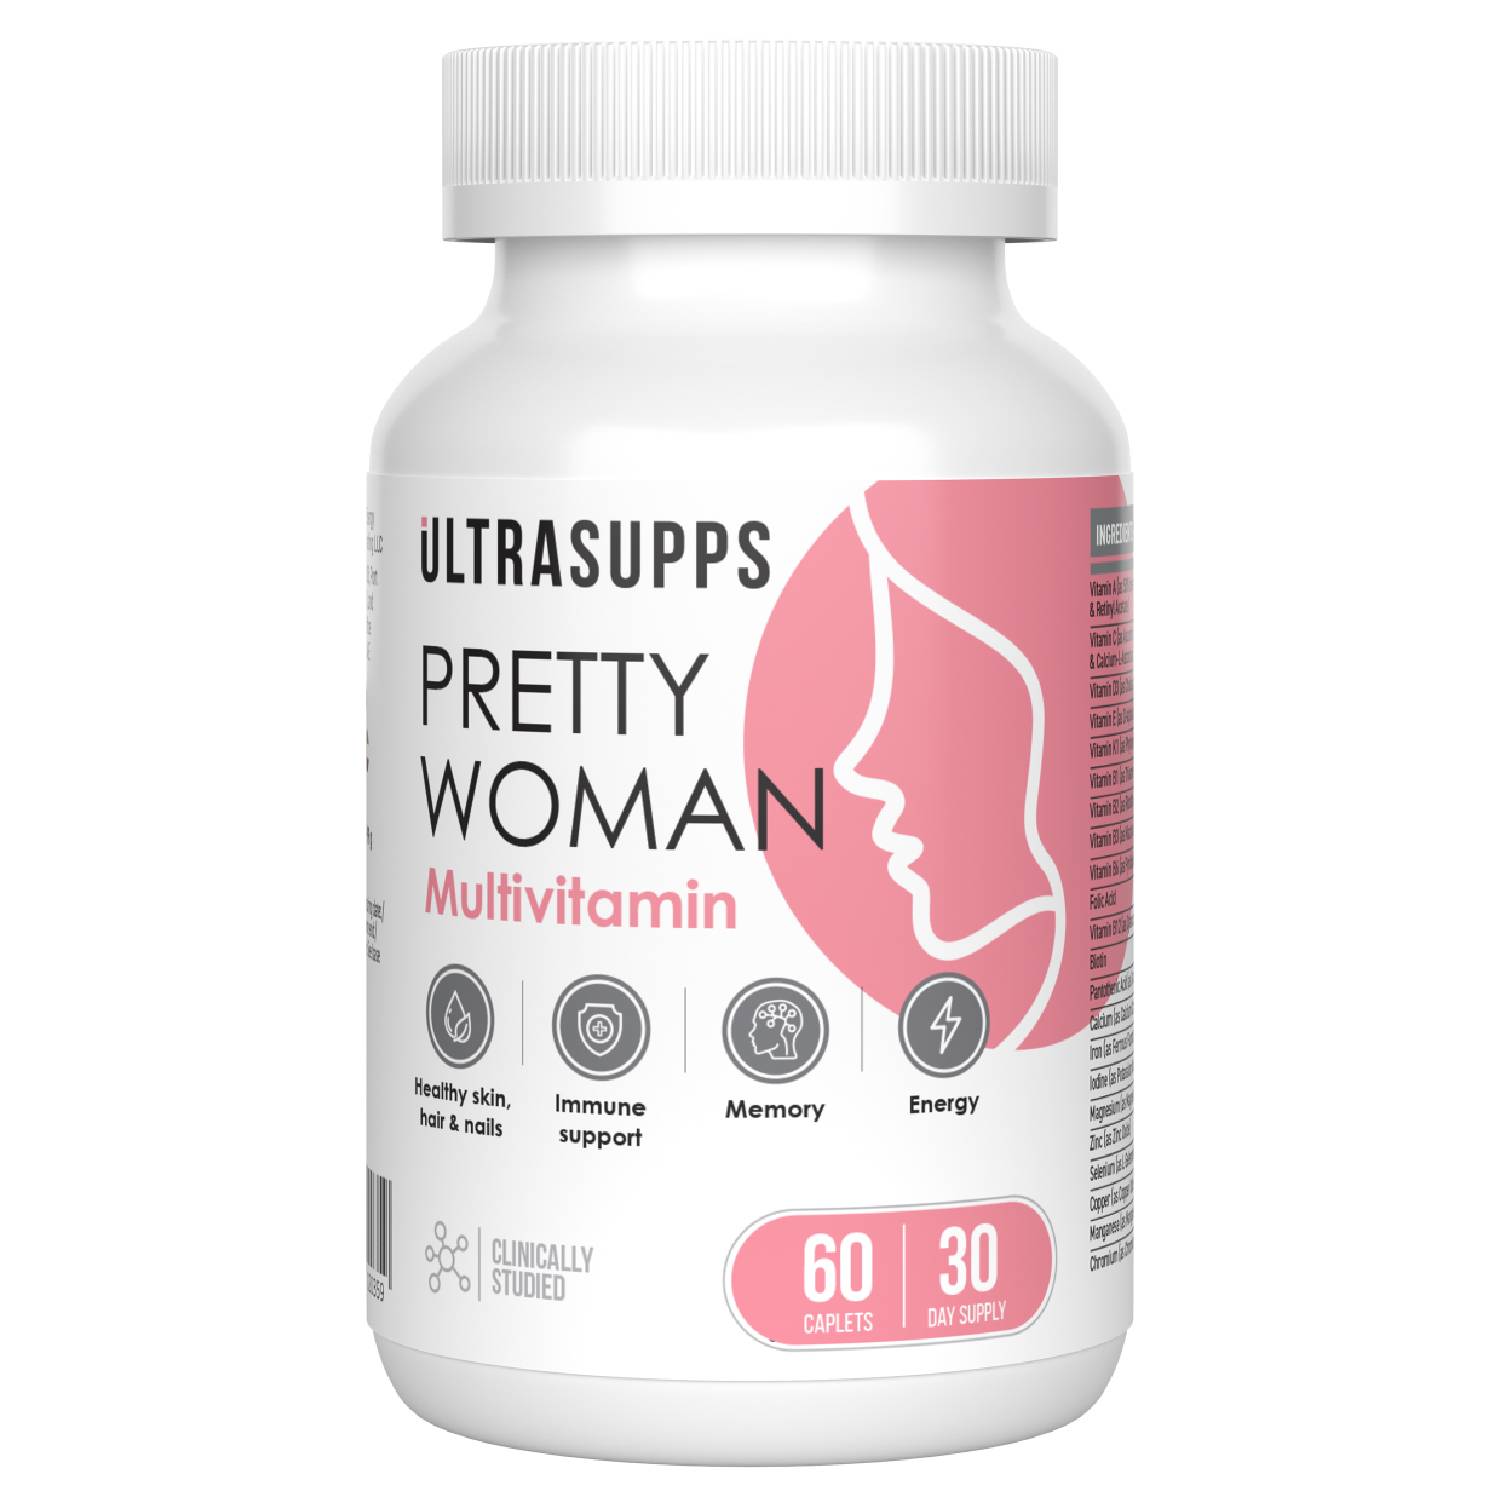 Ultrasupps Витаминно-минеральный комплекс для женщин Pretty Woman Multivitamin, 60 каплет (Ultrasupps, ) lady s formula для укрепления костной ткани таблетки 2г 60 lady s formula укрепление женского здоровья